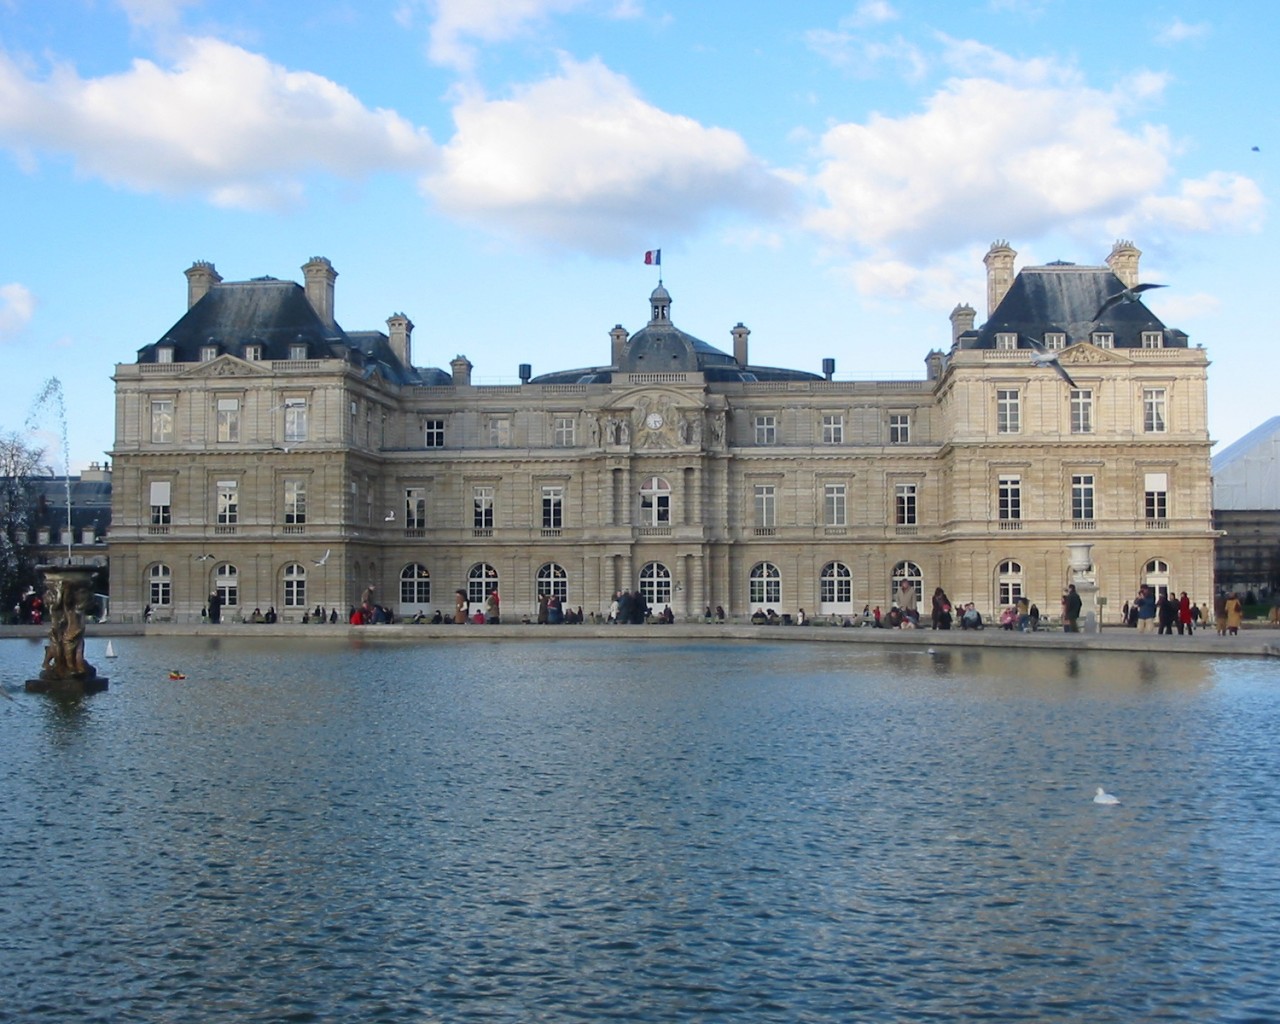 Luxembourg Palace 1280 x 1024